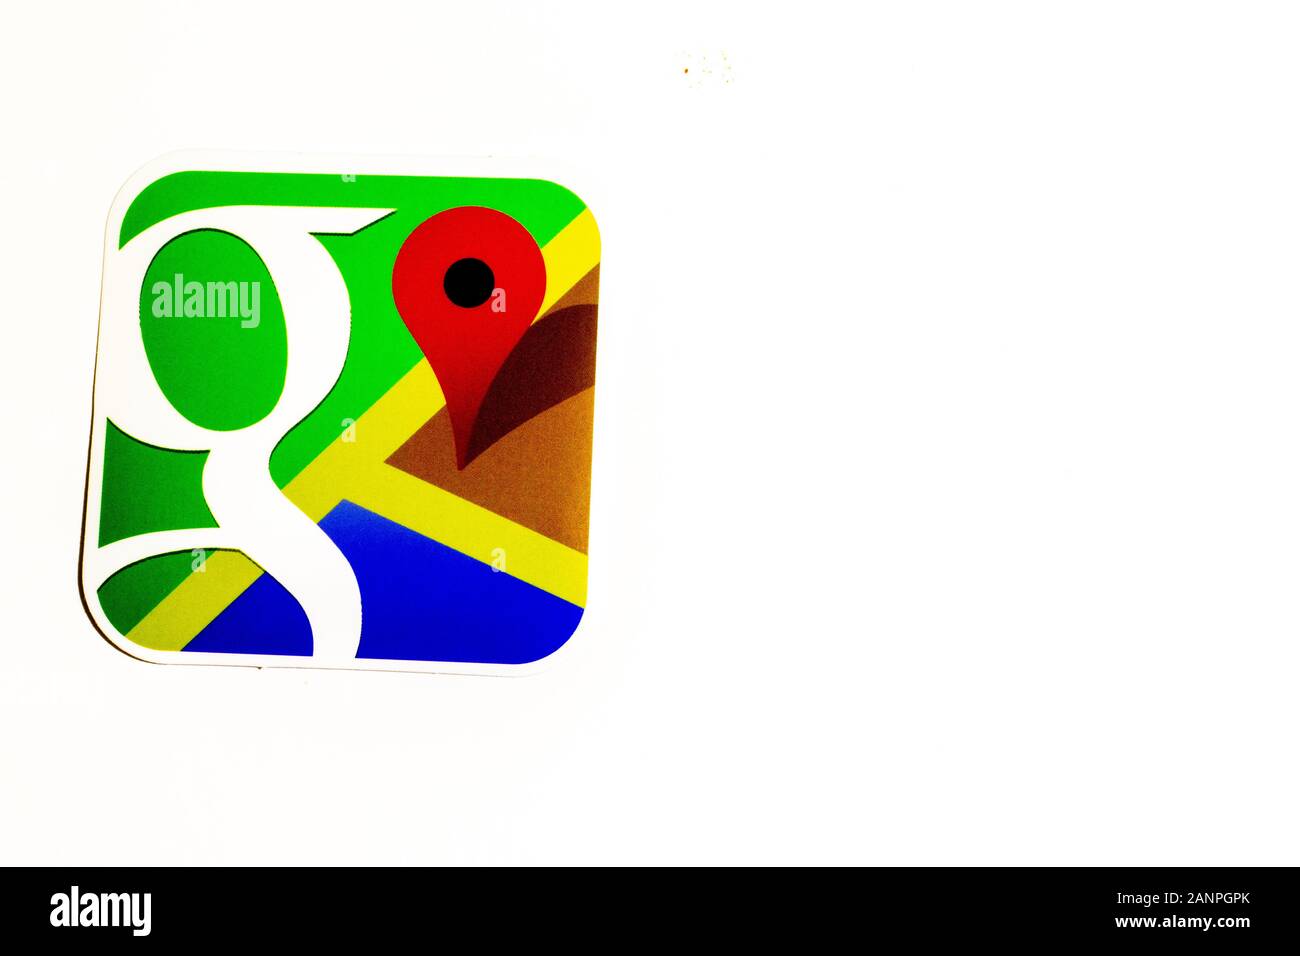 Los Angeles, Californie, États-Unis - 17 janvier 2020: Logo Google Maps sur fond blanc avec espace de copie. Icône des médias sociaux, éditorial illustratif Banque D'Images